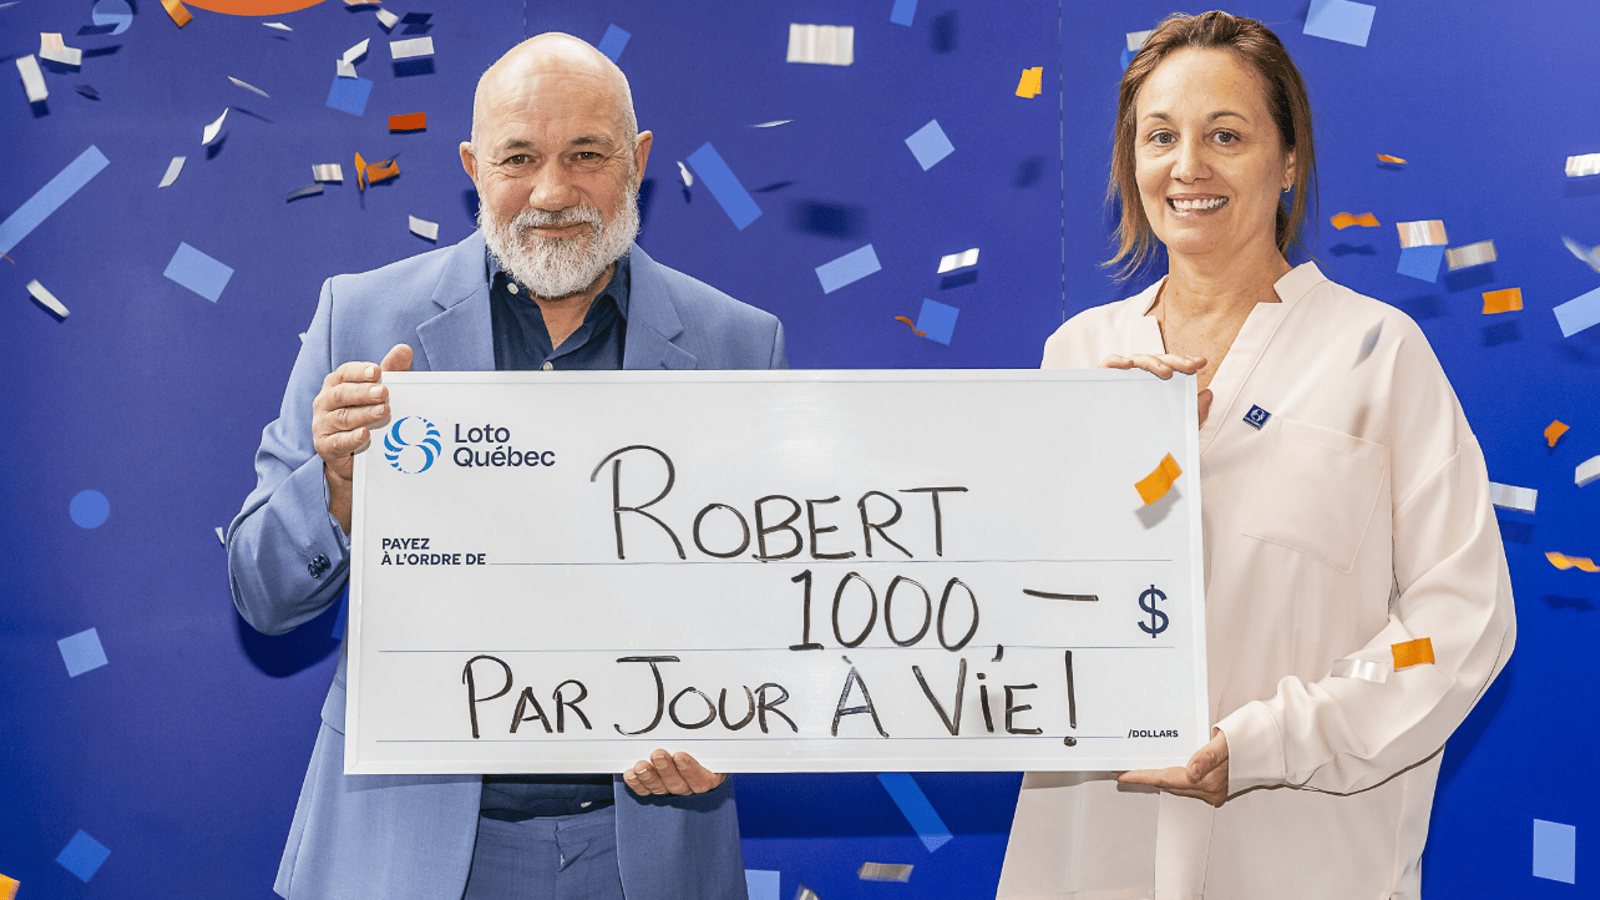 Un Montréalais passionné d'astrologie remporte 1000 $ par jour à vie 